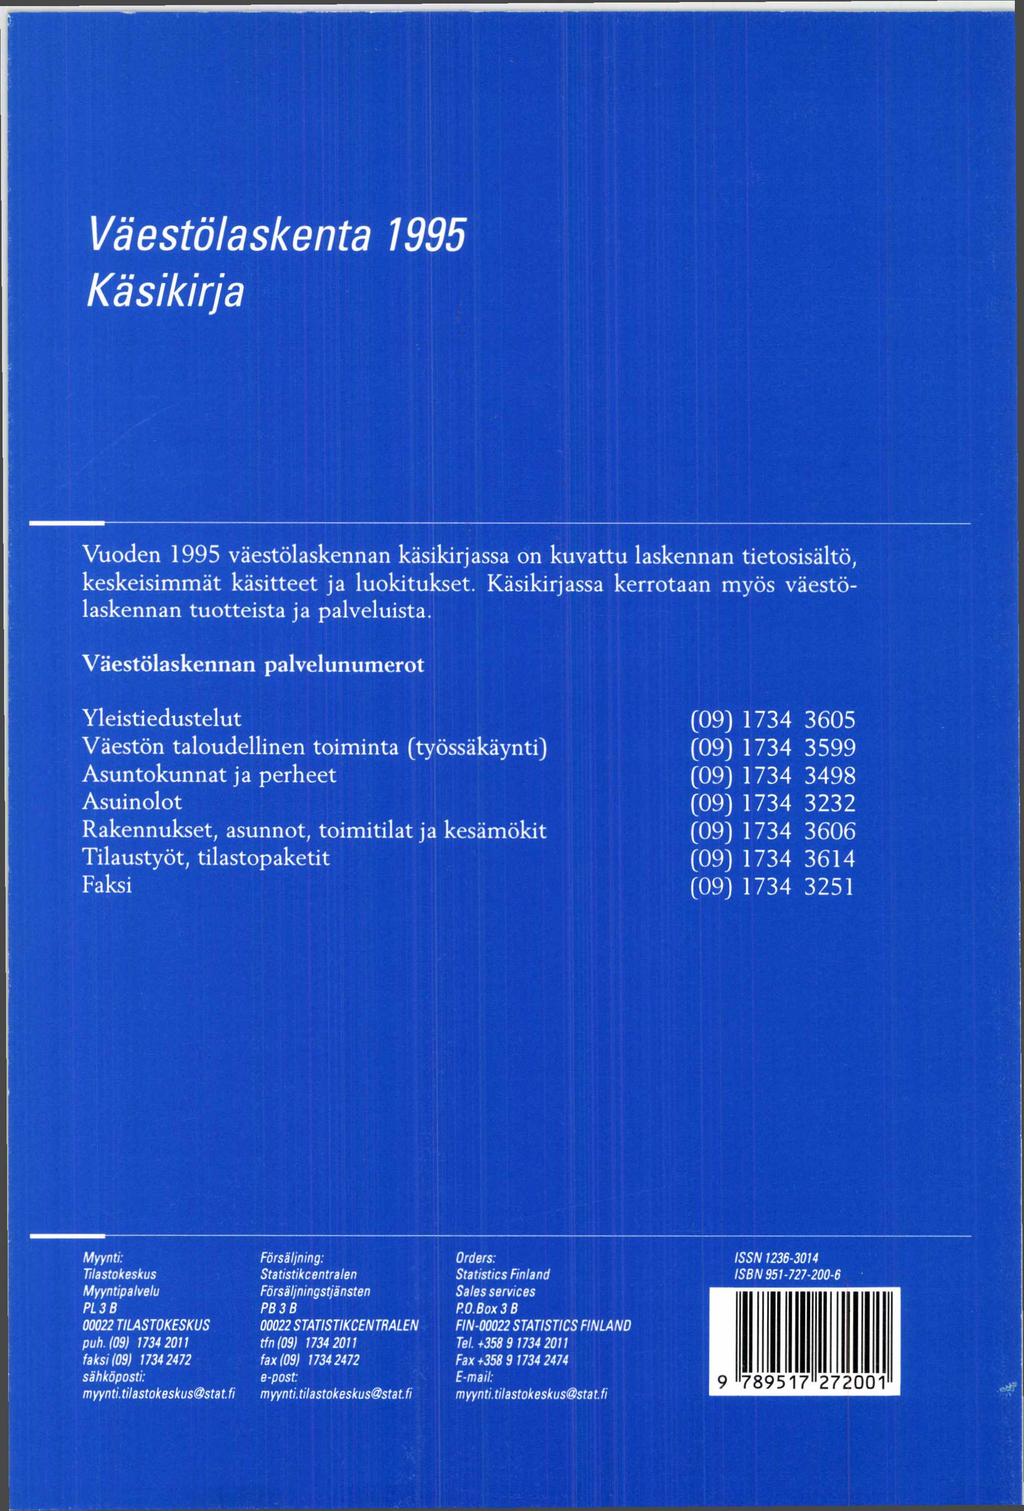 Väestölaskenta 1995 Käsikirja Vuoden 1995 väestölaskennan käsikirjassa on kuvattu laskennan tietosisältö, keskeisim m ät käsitteet ja luokitukset.